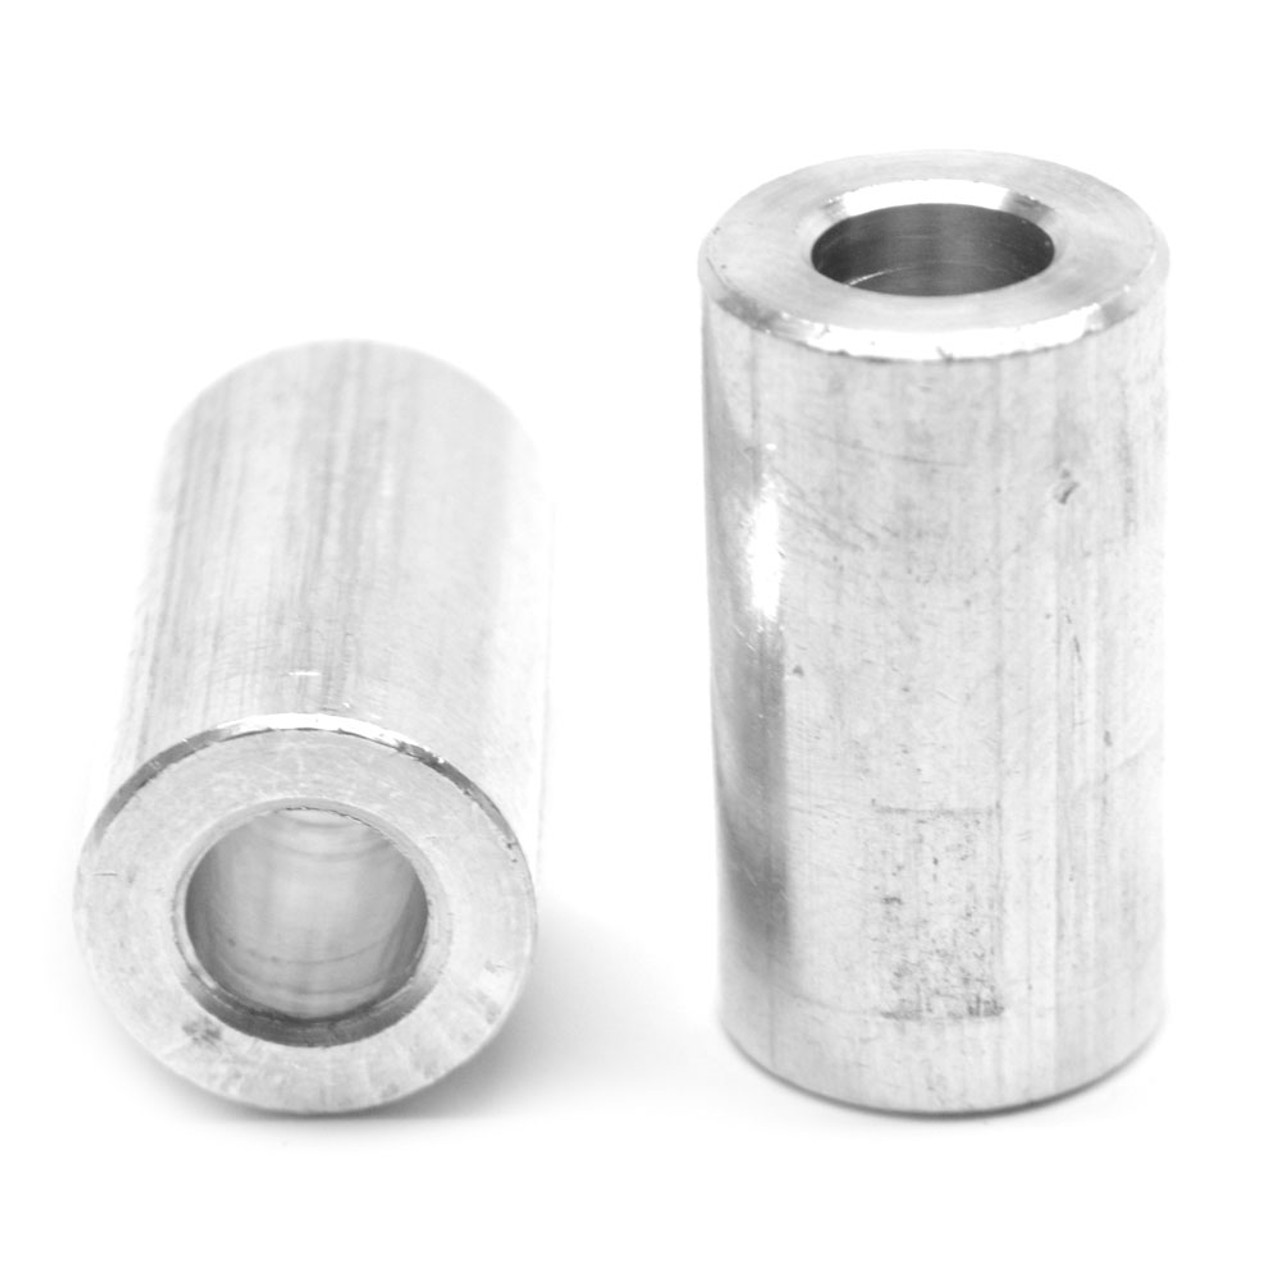 #10 x 1 1/4" x 5/16" OD Round Spacer Aluminum